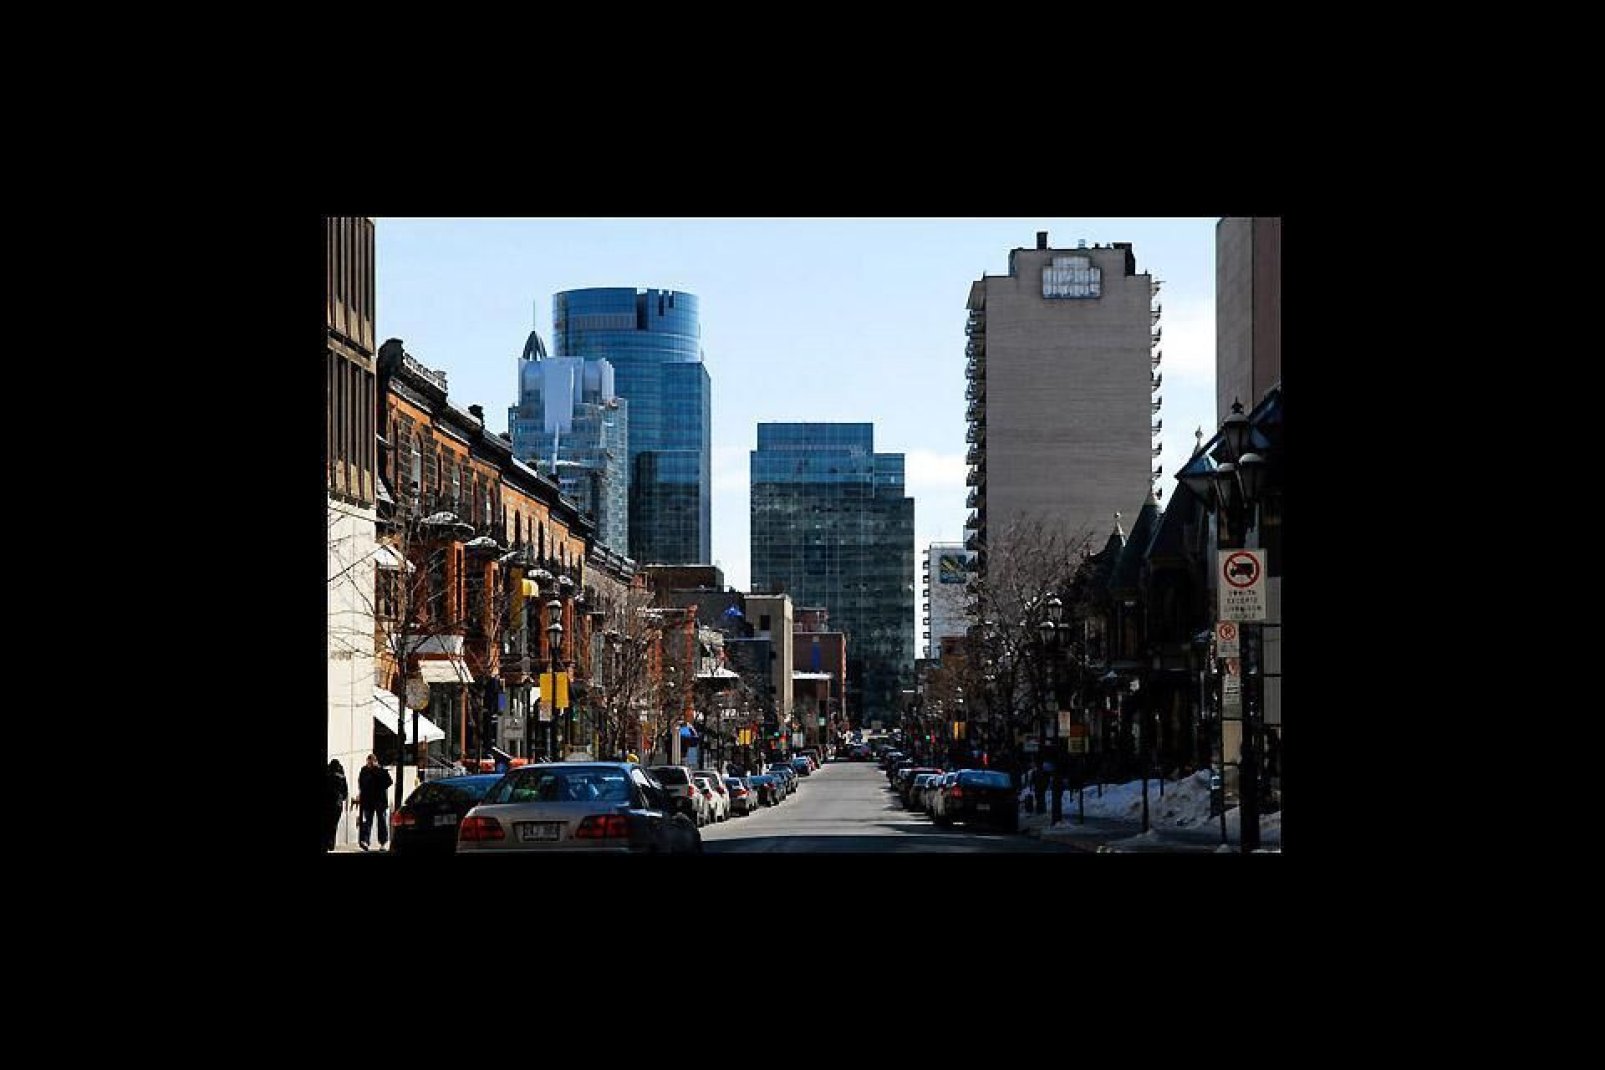 Polo economico della regione del Québec, Montreal è la seconda città del Canada per dimensioni, dopo Toronto.